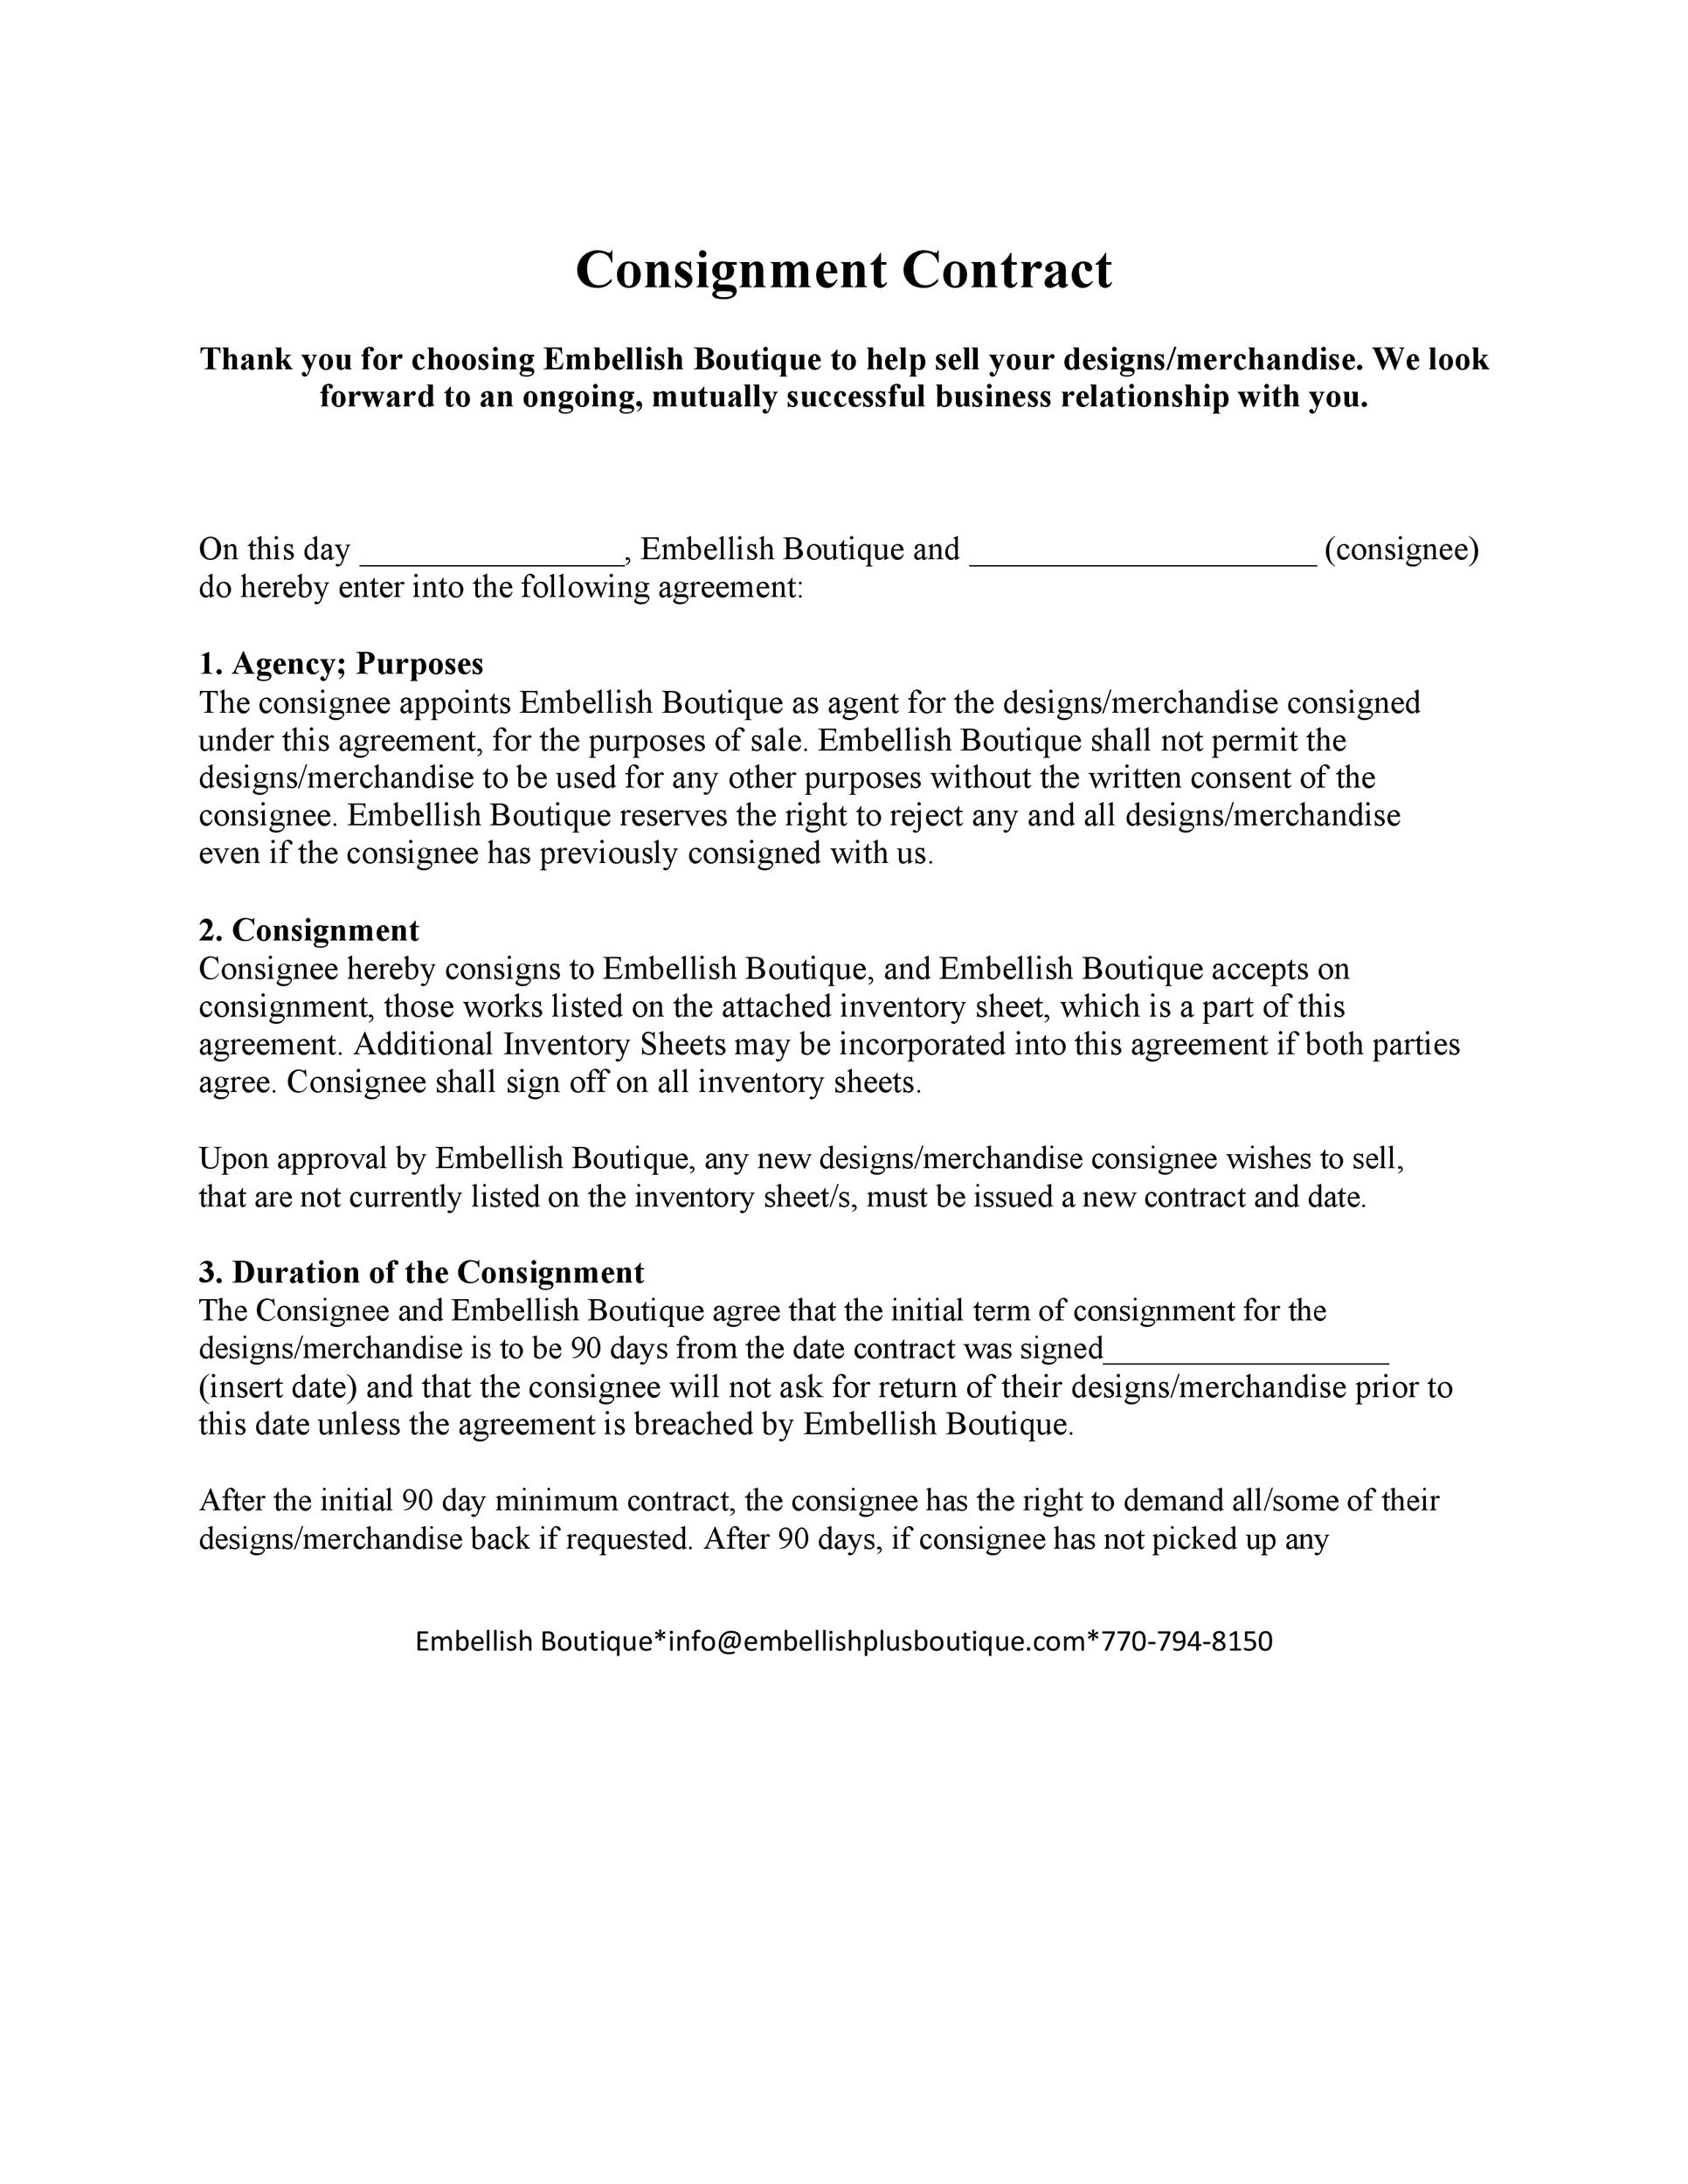 Modèle de contrat de consignation gratuit 06